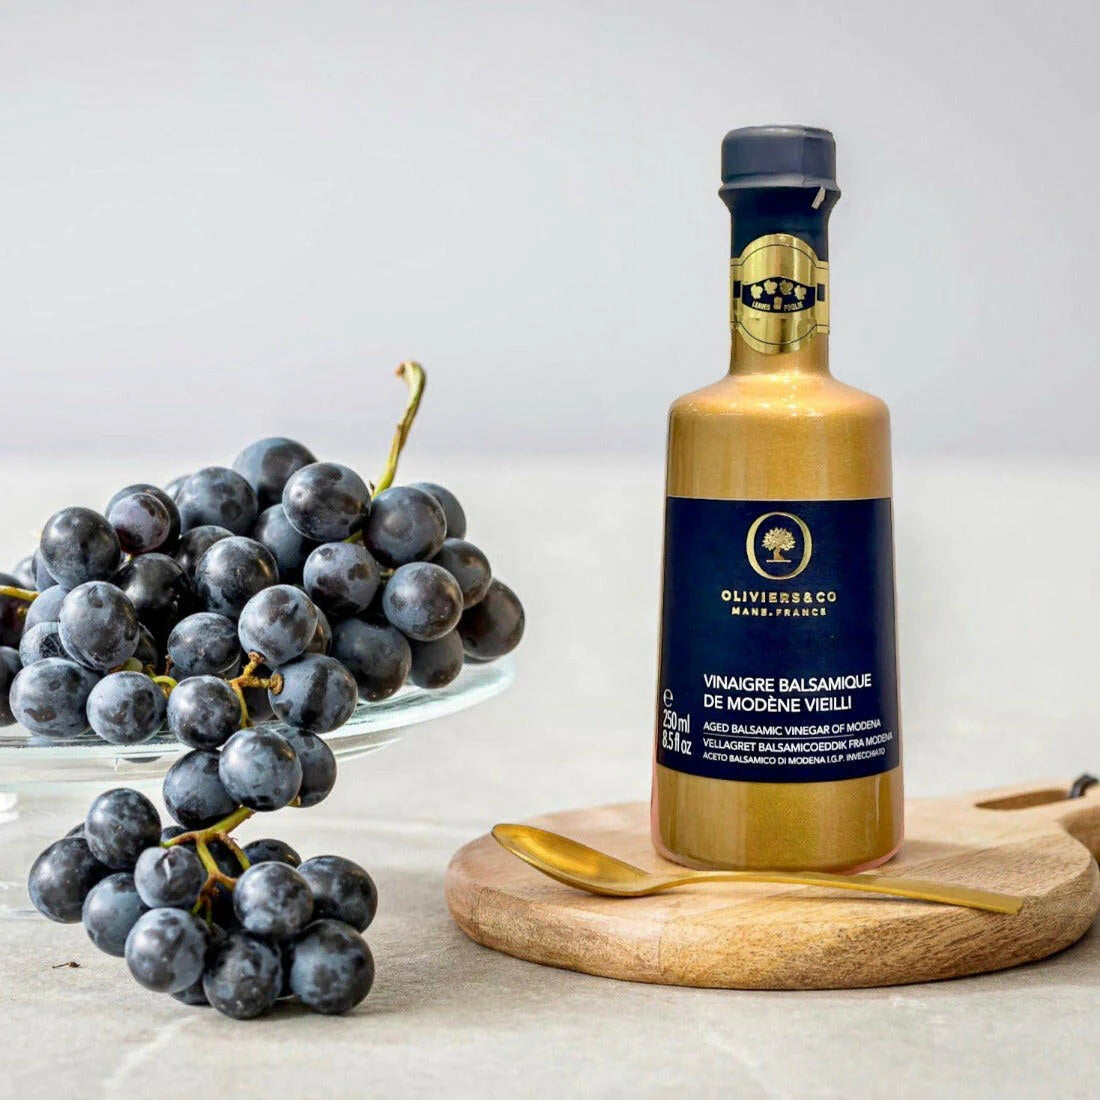 Flasche Balsamico-Essig aus Modena von Oliviers & Co mit goldener Etikette. Der Balsamico steht auf einem weißen Hintergrund und zeigt das elegante Design des Produkts, welches für seine hohe Qualität und intensiven Geschmack bekannt ist.